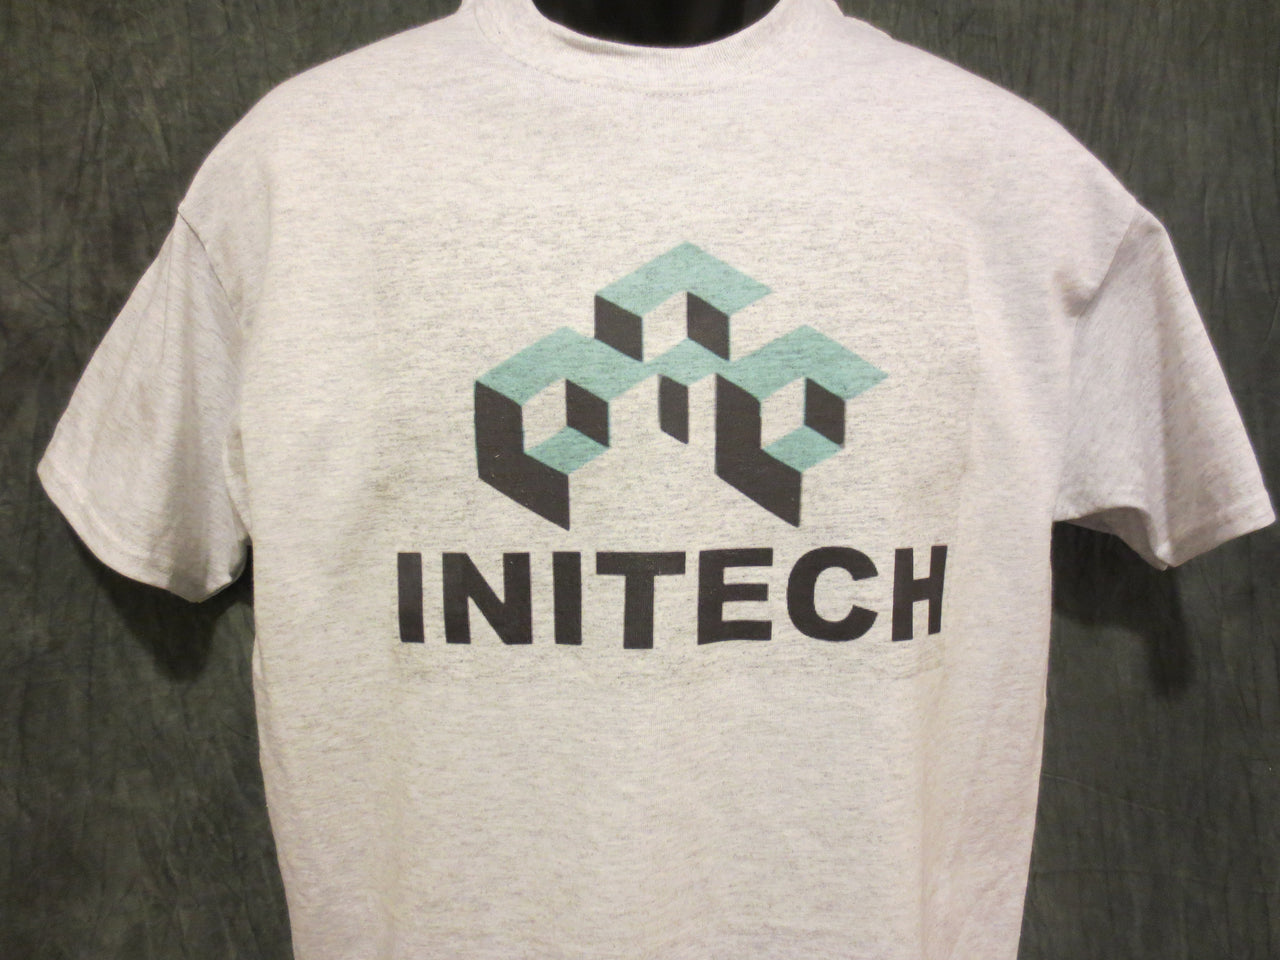 Initech Tshirt and Mug Comb - TshirtNow.net - 1